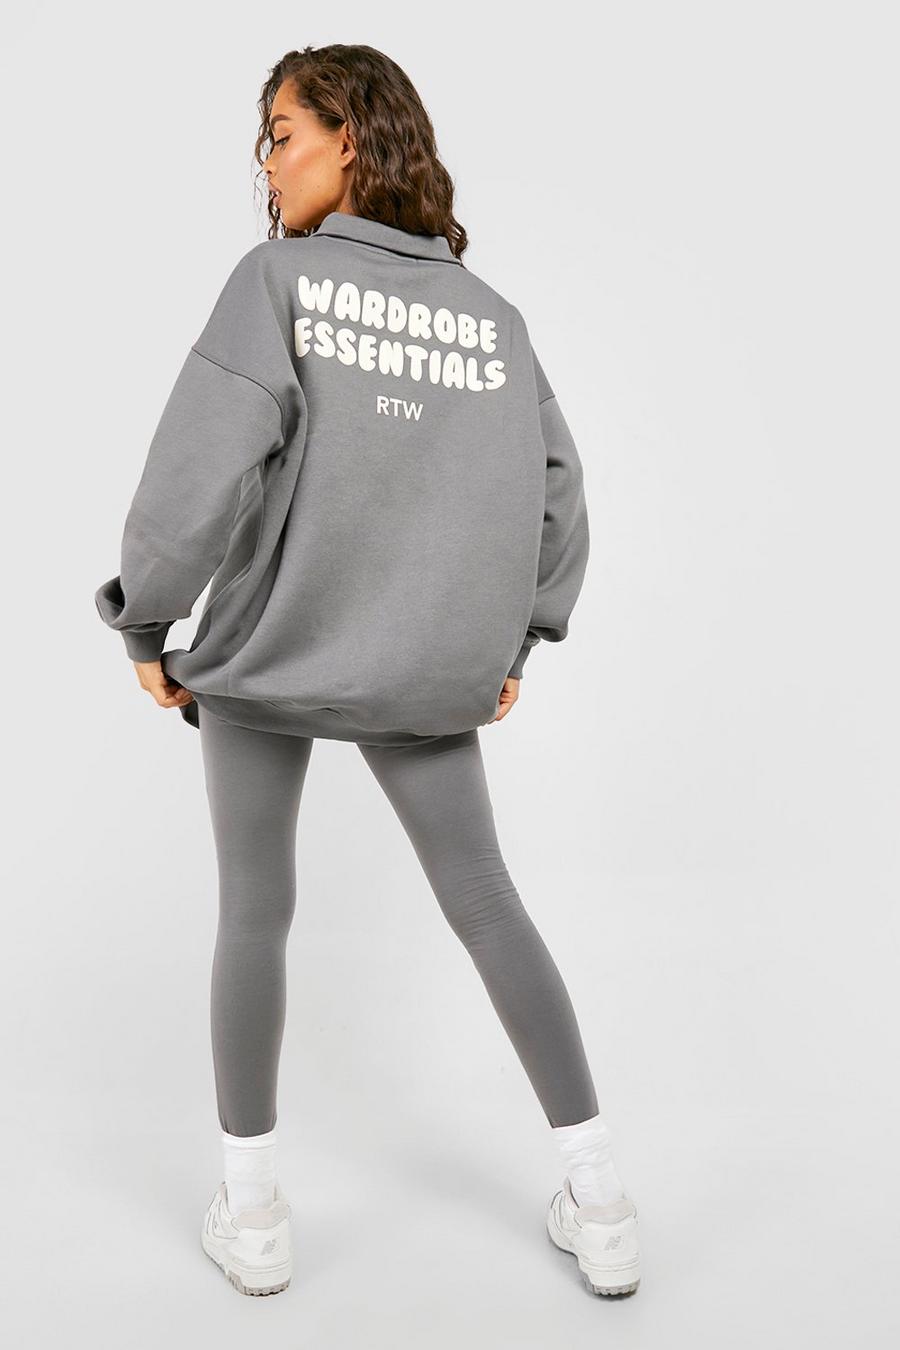 Charcoal Wardrobe Essentials Half Zip Sweatshirt Legging Tracksuit image number 1